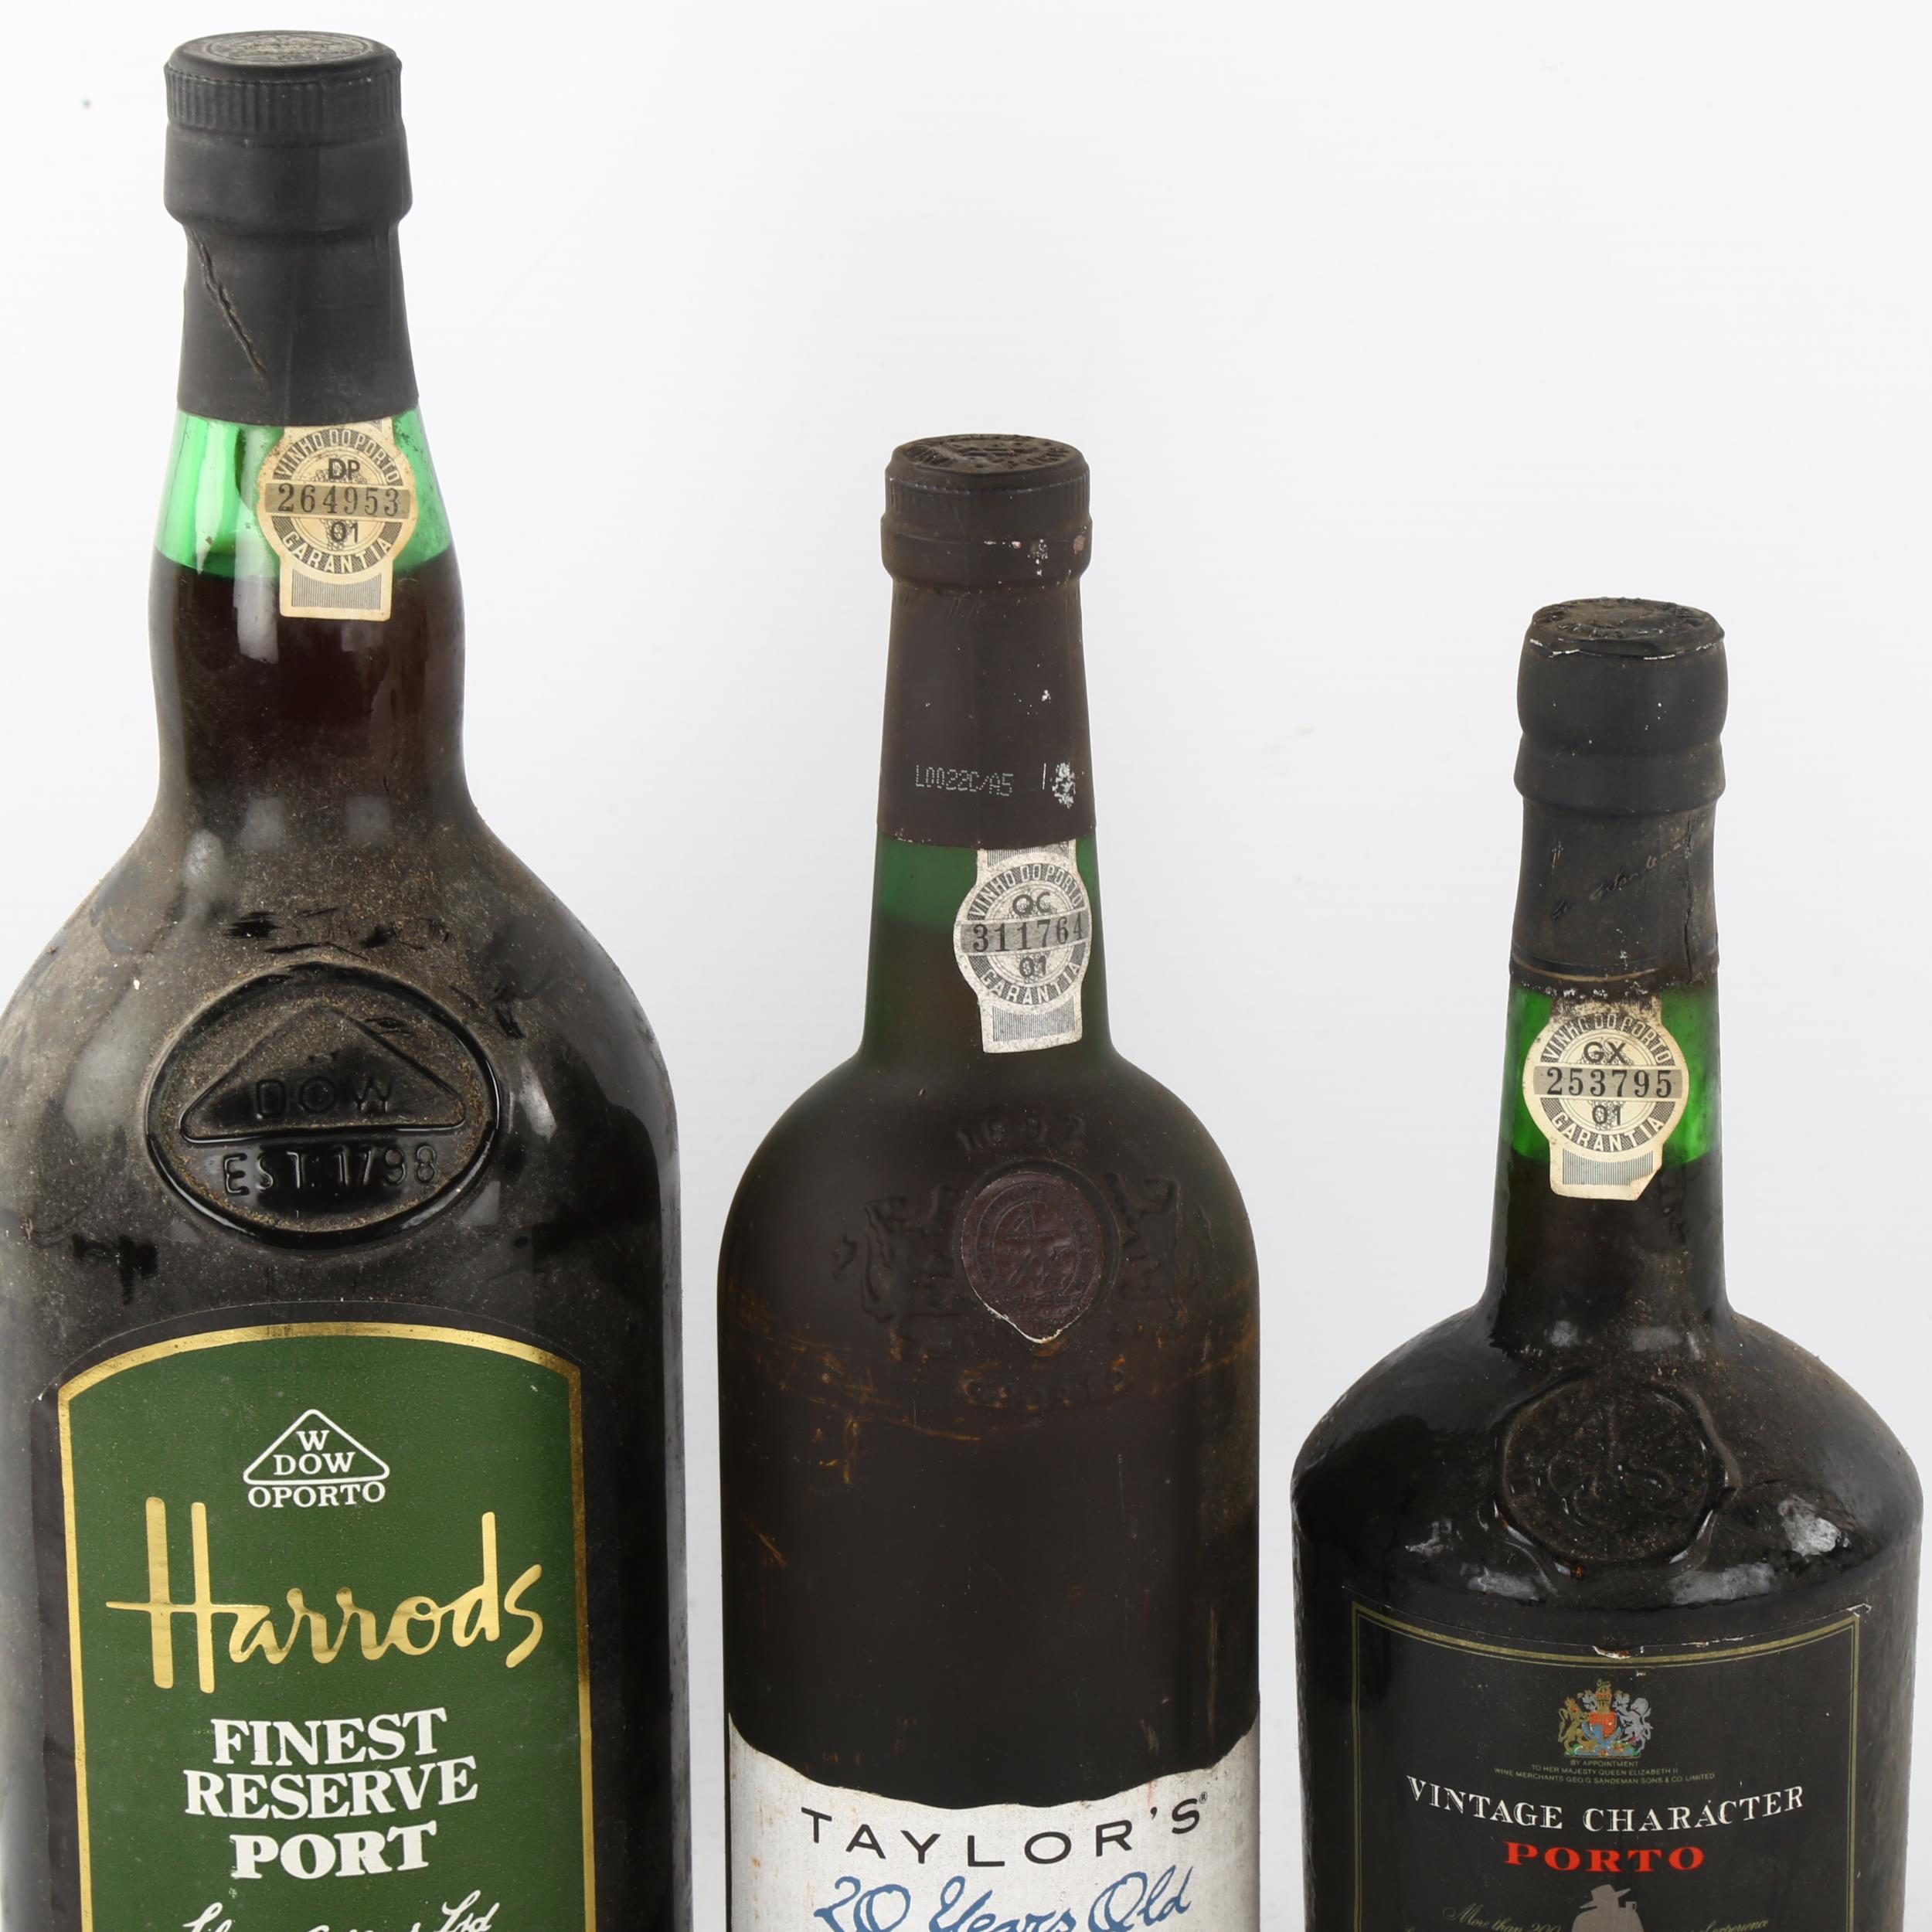 3 bottles of port wine, Magnum NV Dow's bottled for Harrods, Taylor's 20 yr old bottled 1995, - Image 2 of 3